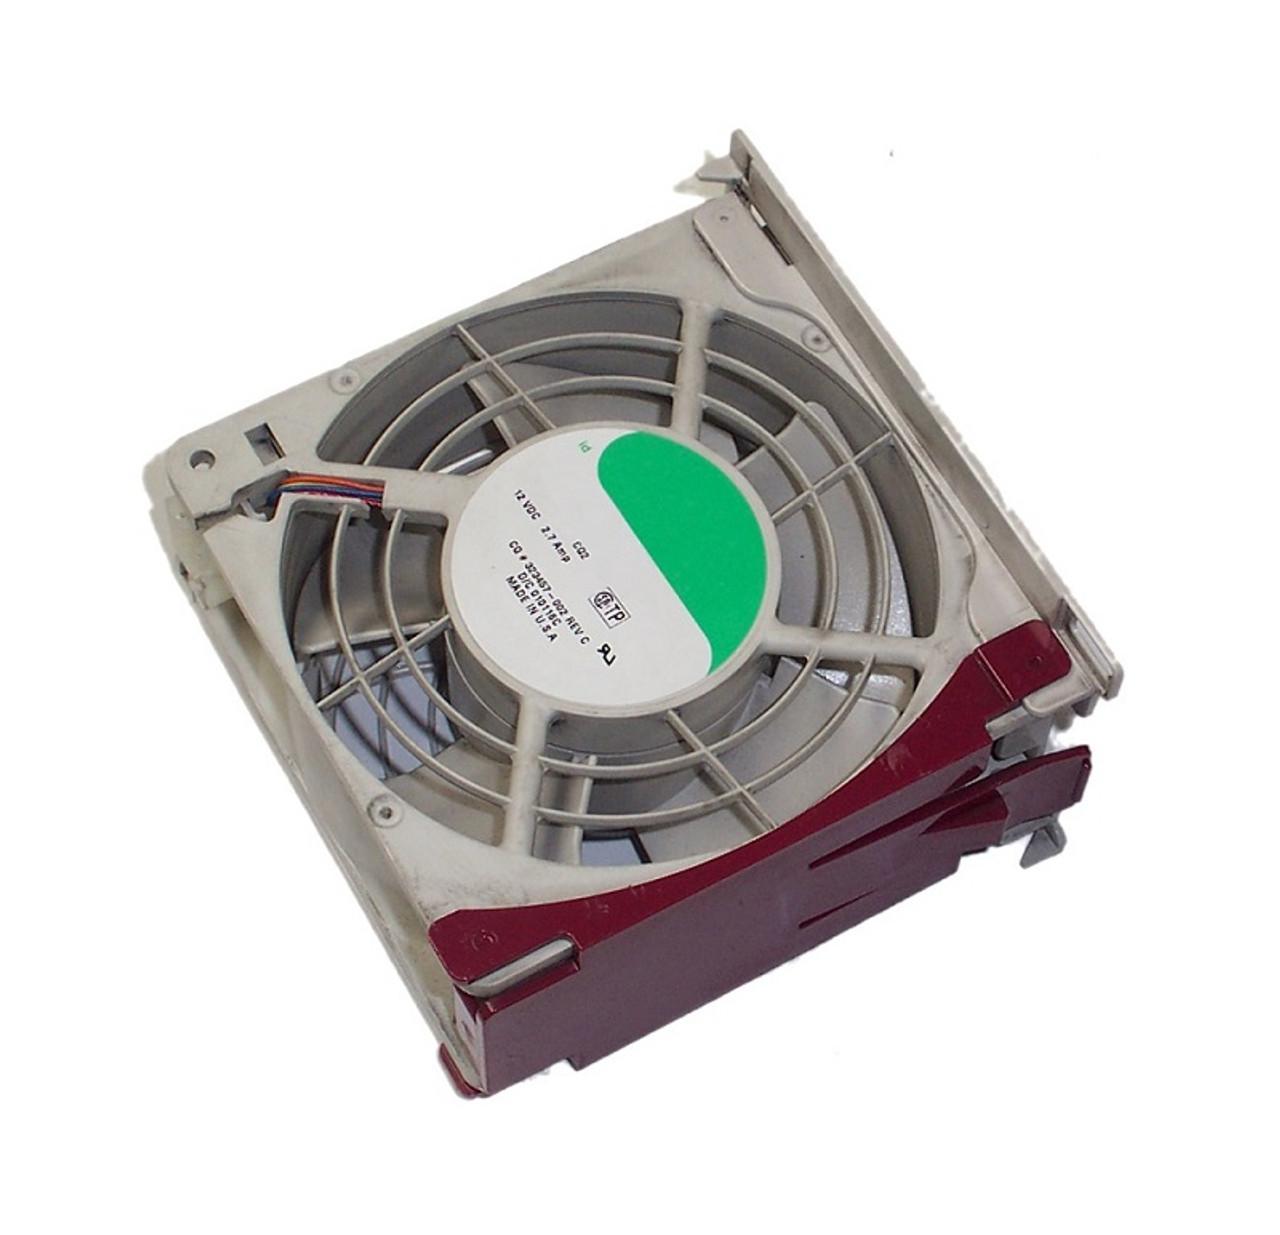 663120-001 - HP Fan for ProLiant DL160 G8